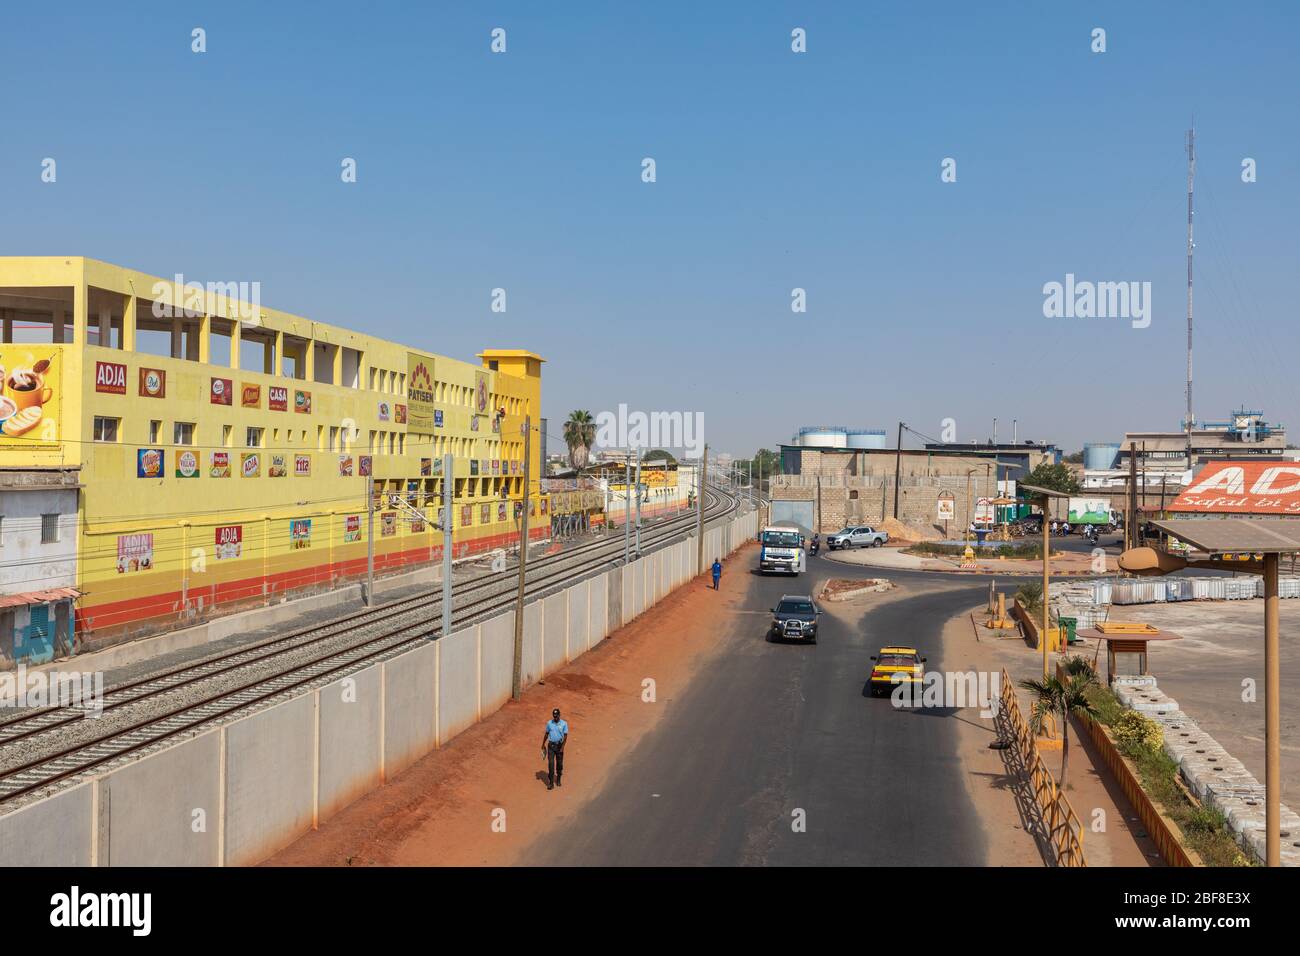 DAKAR, SENEGAL - 11 NOVEMBRE 2019: Persone che lavorano e traffico a Dakar, capitale del Senegal, Africa occidentale. Foto Stock